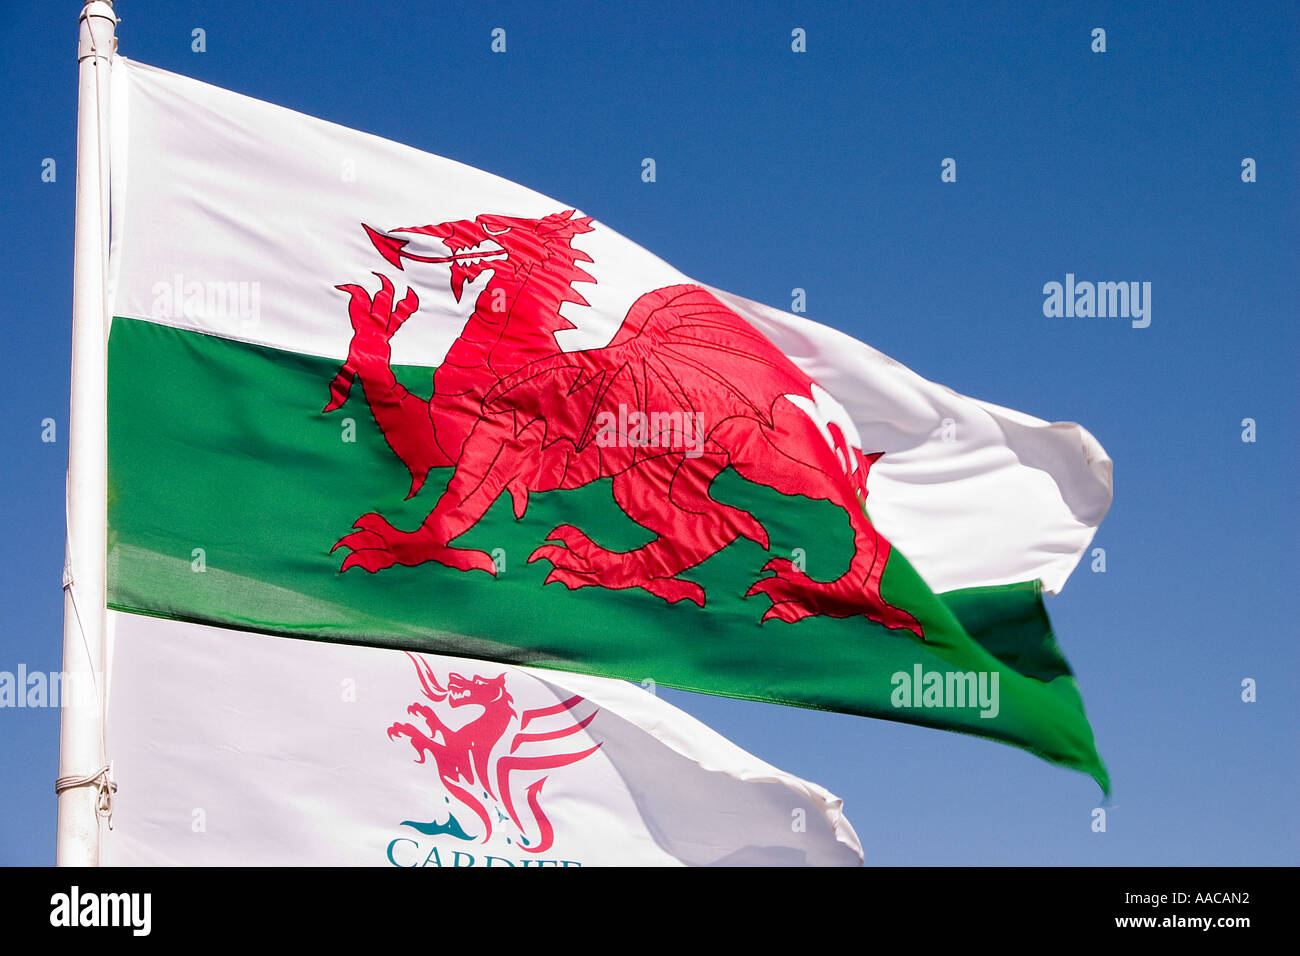 Welsh dragon flag with Cardiff dragon logo flying alongside Cardiff Bay UK Stock Photo